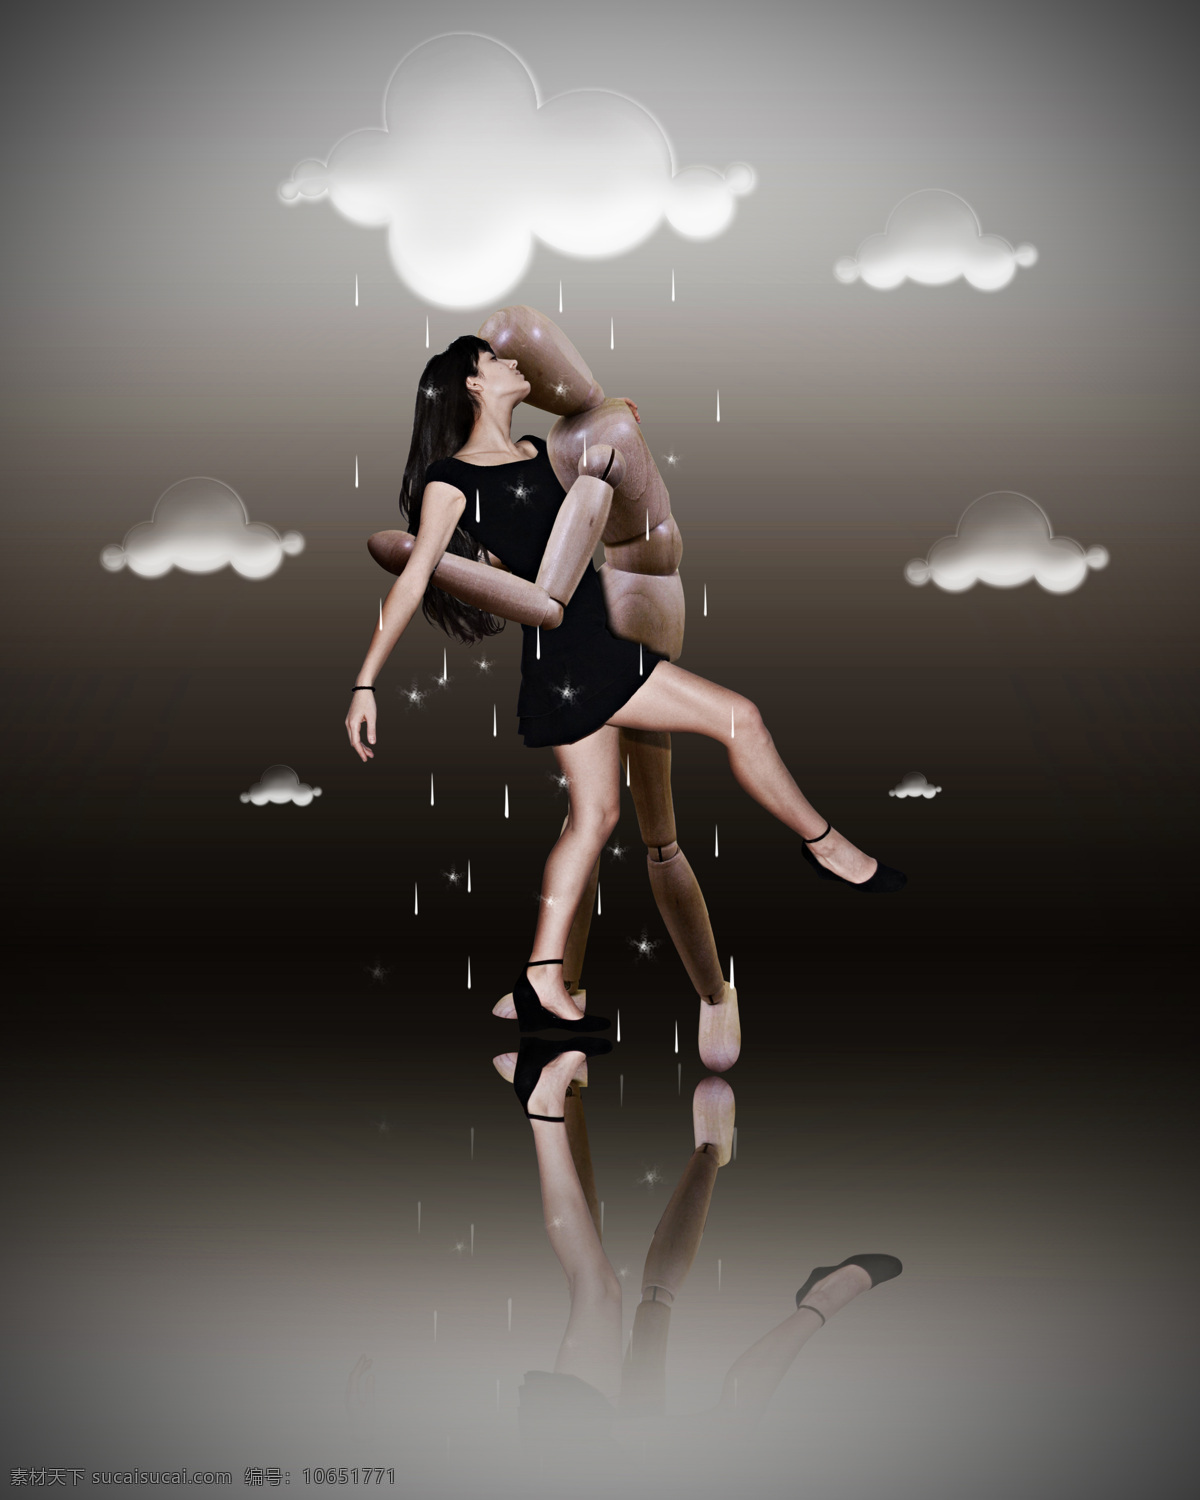 白云 彩云 长发 创意图片 灰色 木偶 女性 人物 创意 设计素材 模板下载 舞者 舞蹈 舞姿 雨滴 女性妇女 人物图库 psd源文件